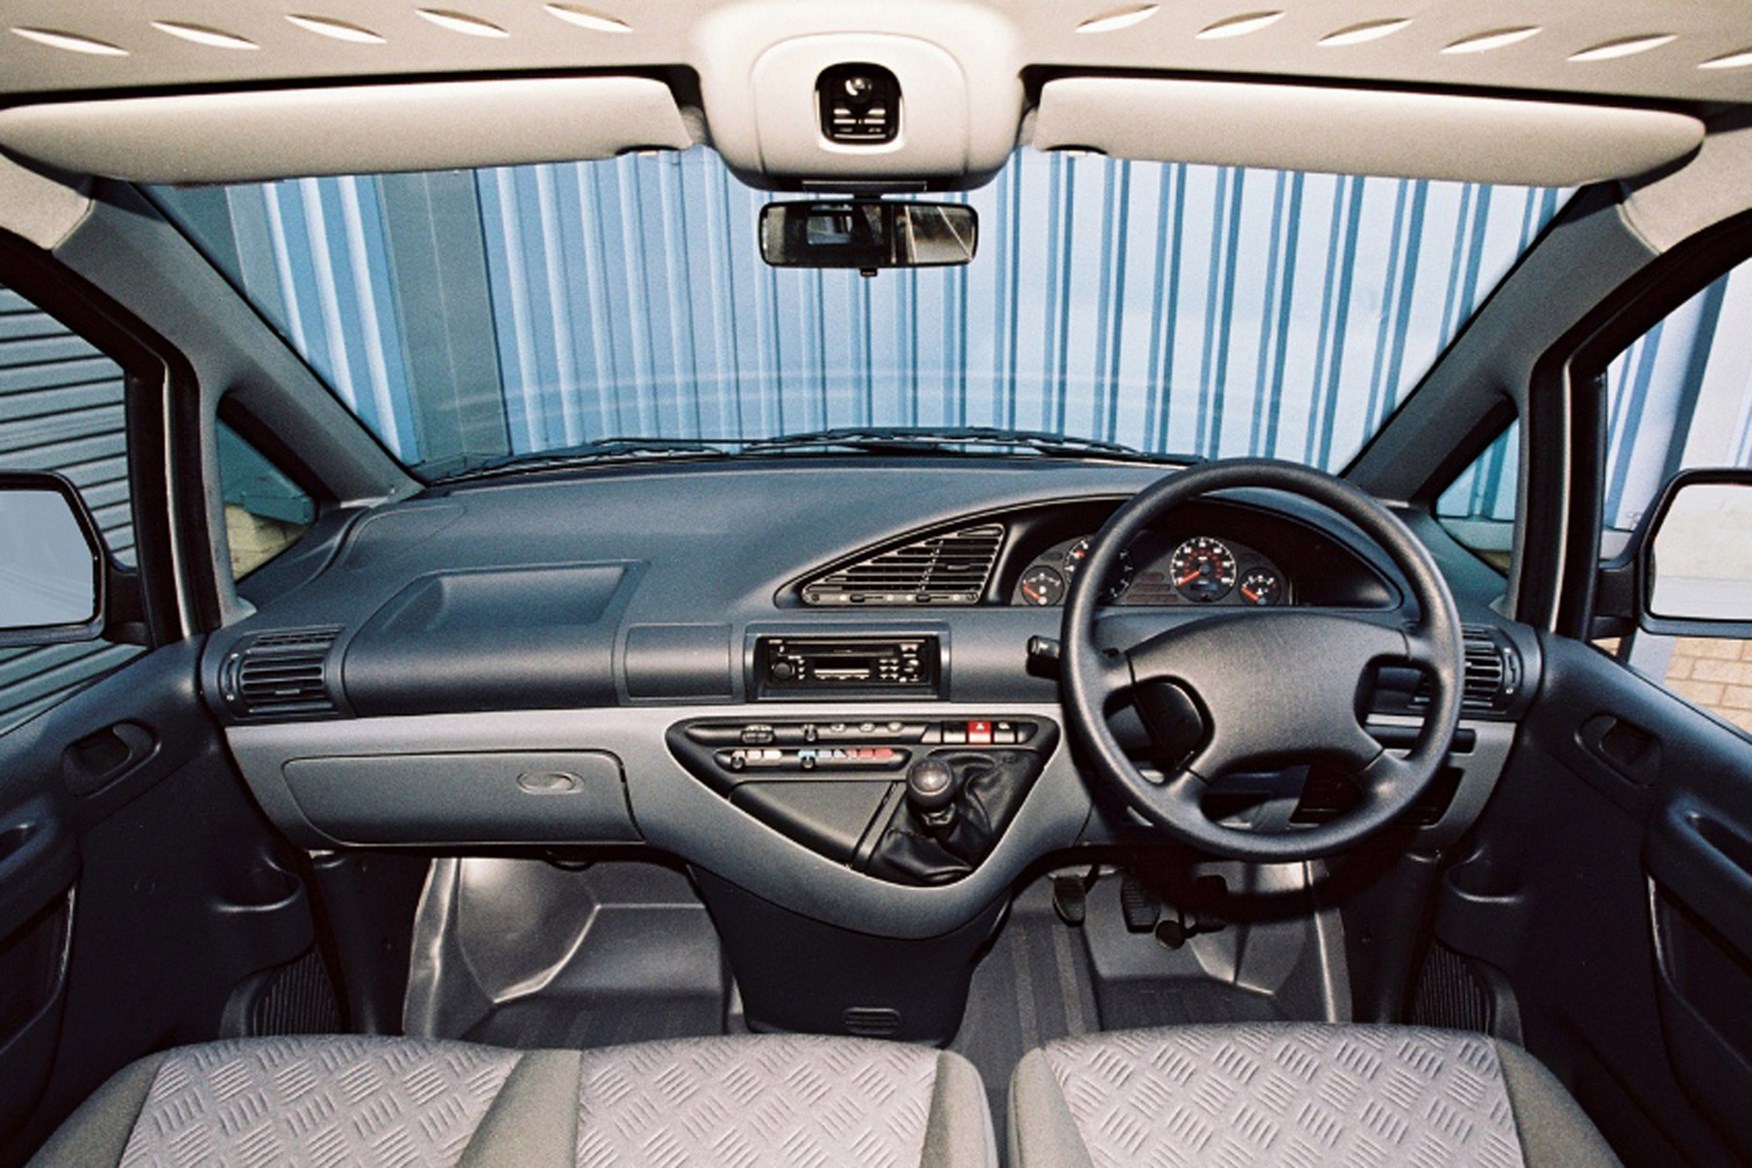 Citroen Dispatch review on Parkers Vans - interior